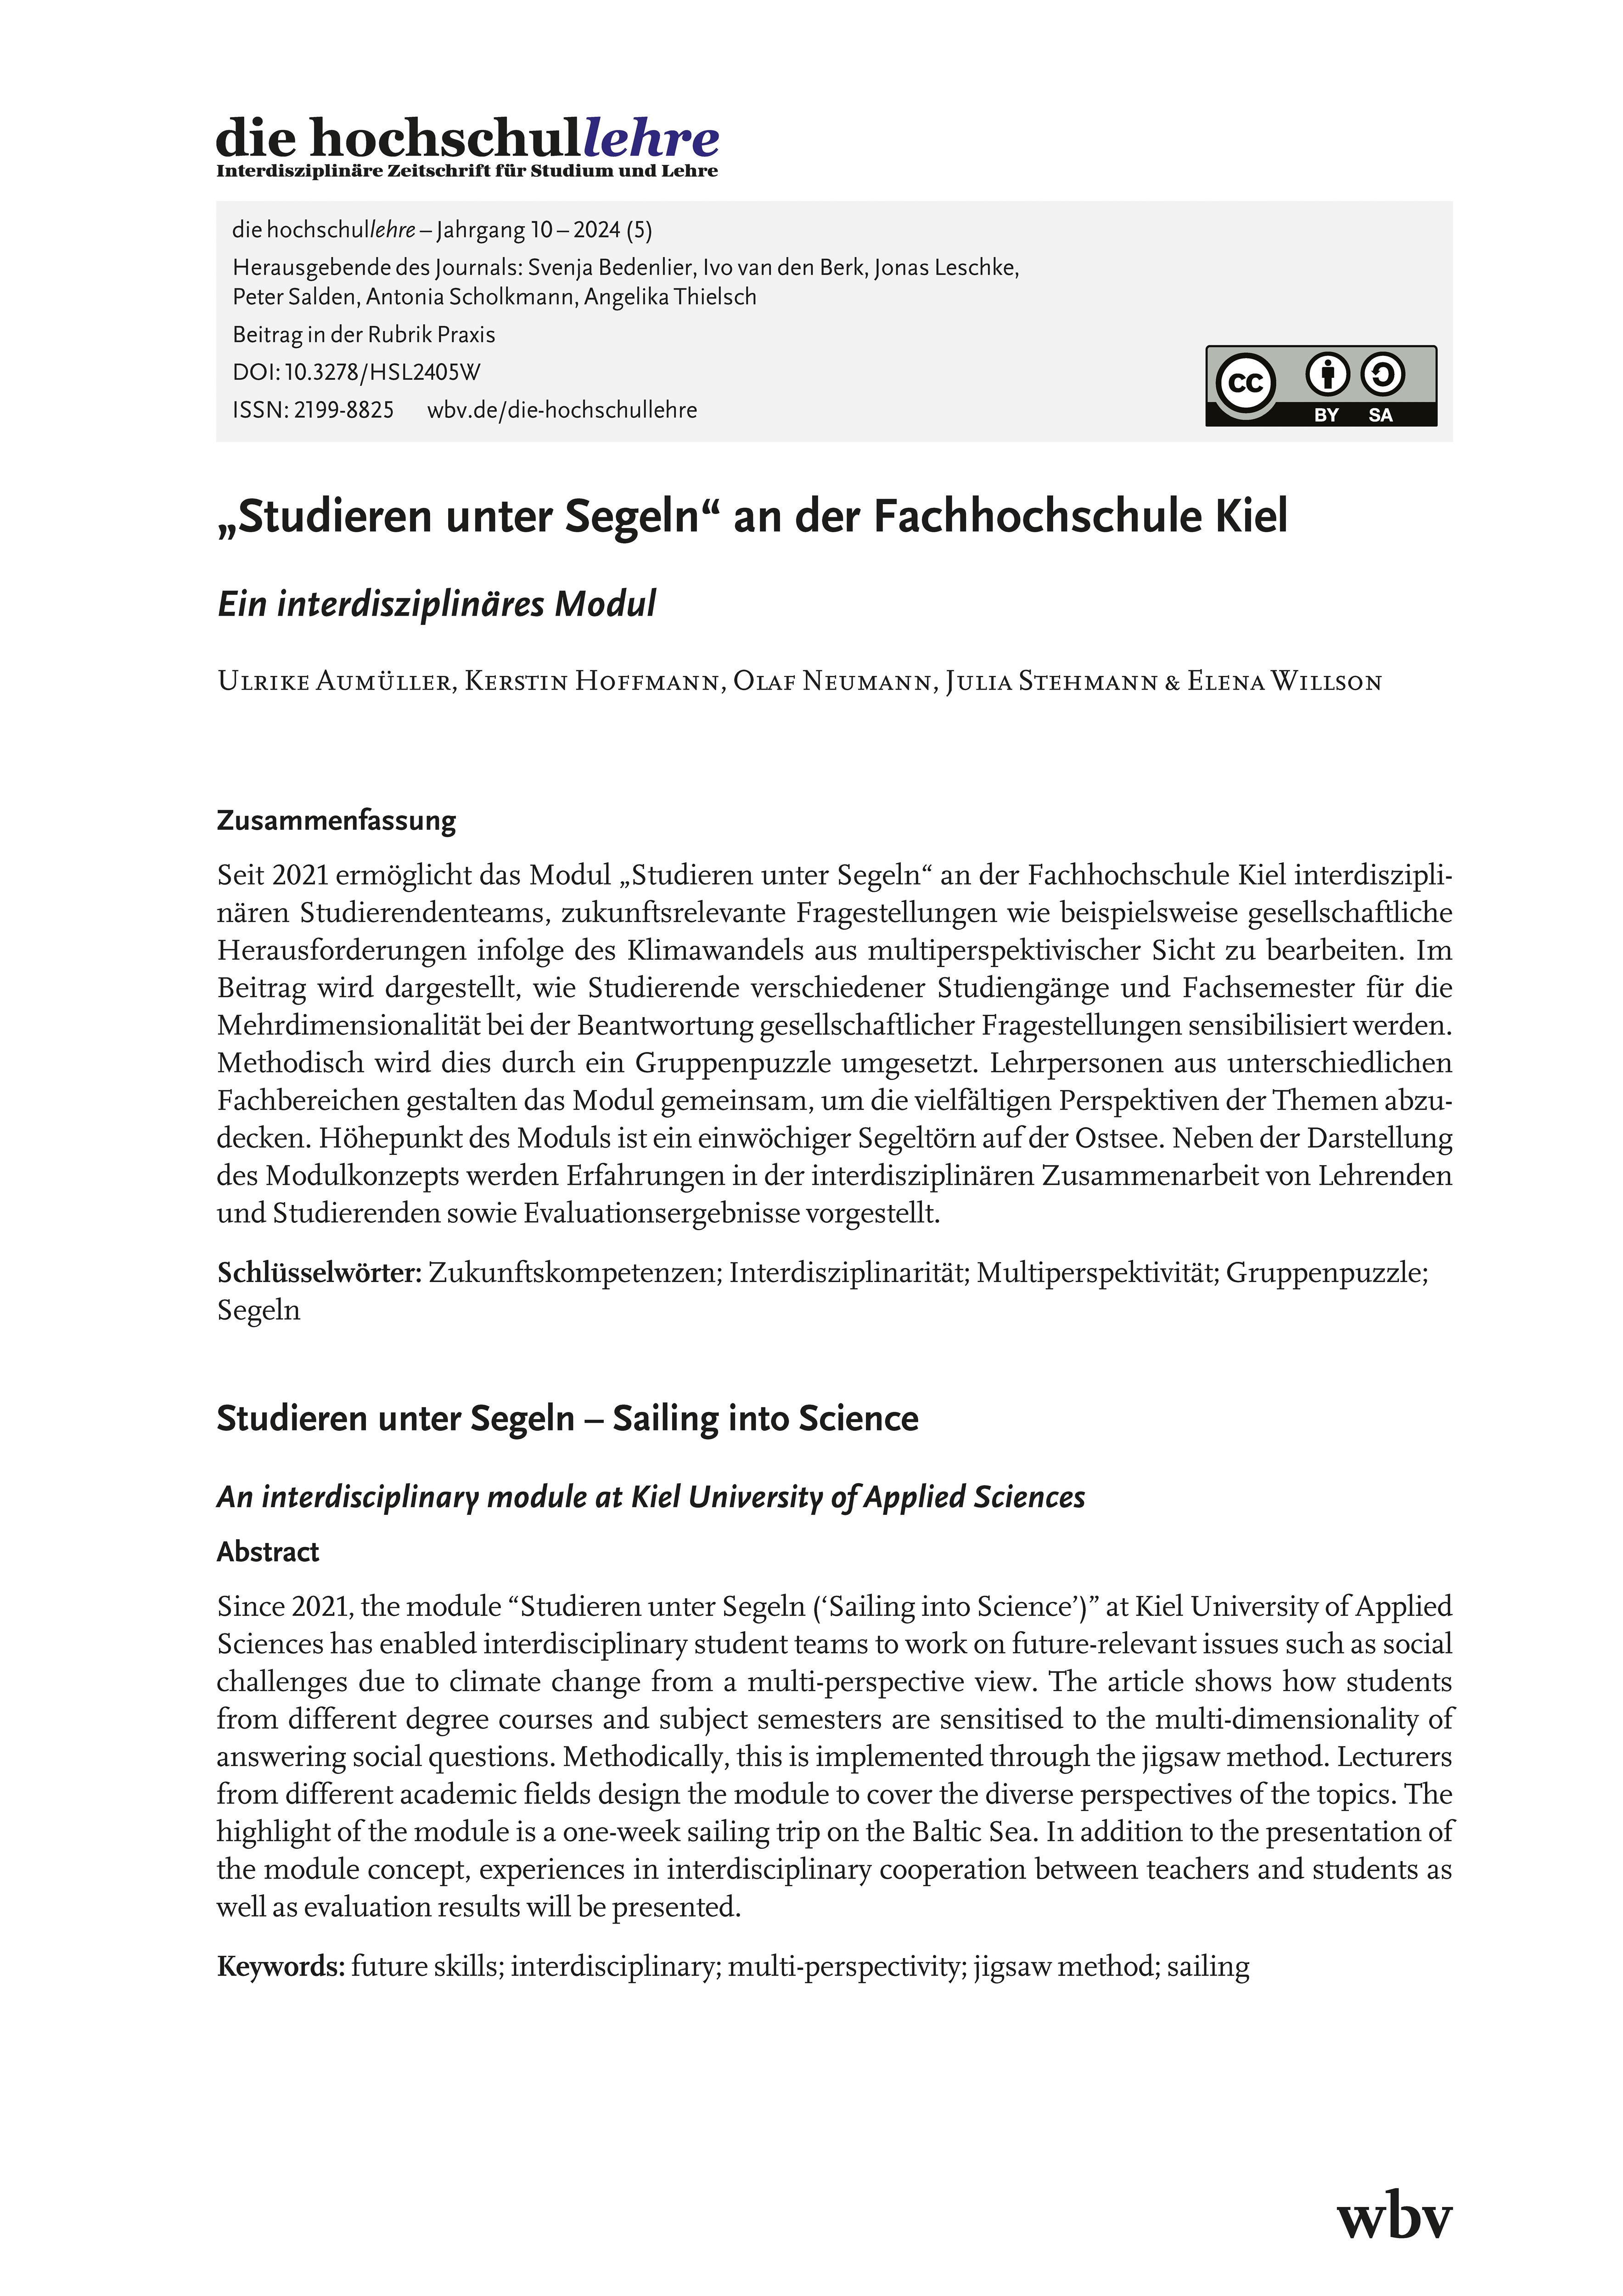 "Studieren unter Segeln" an der Fachhochschule Kiel. Ein interdisziplinäres Modul